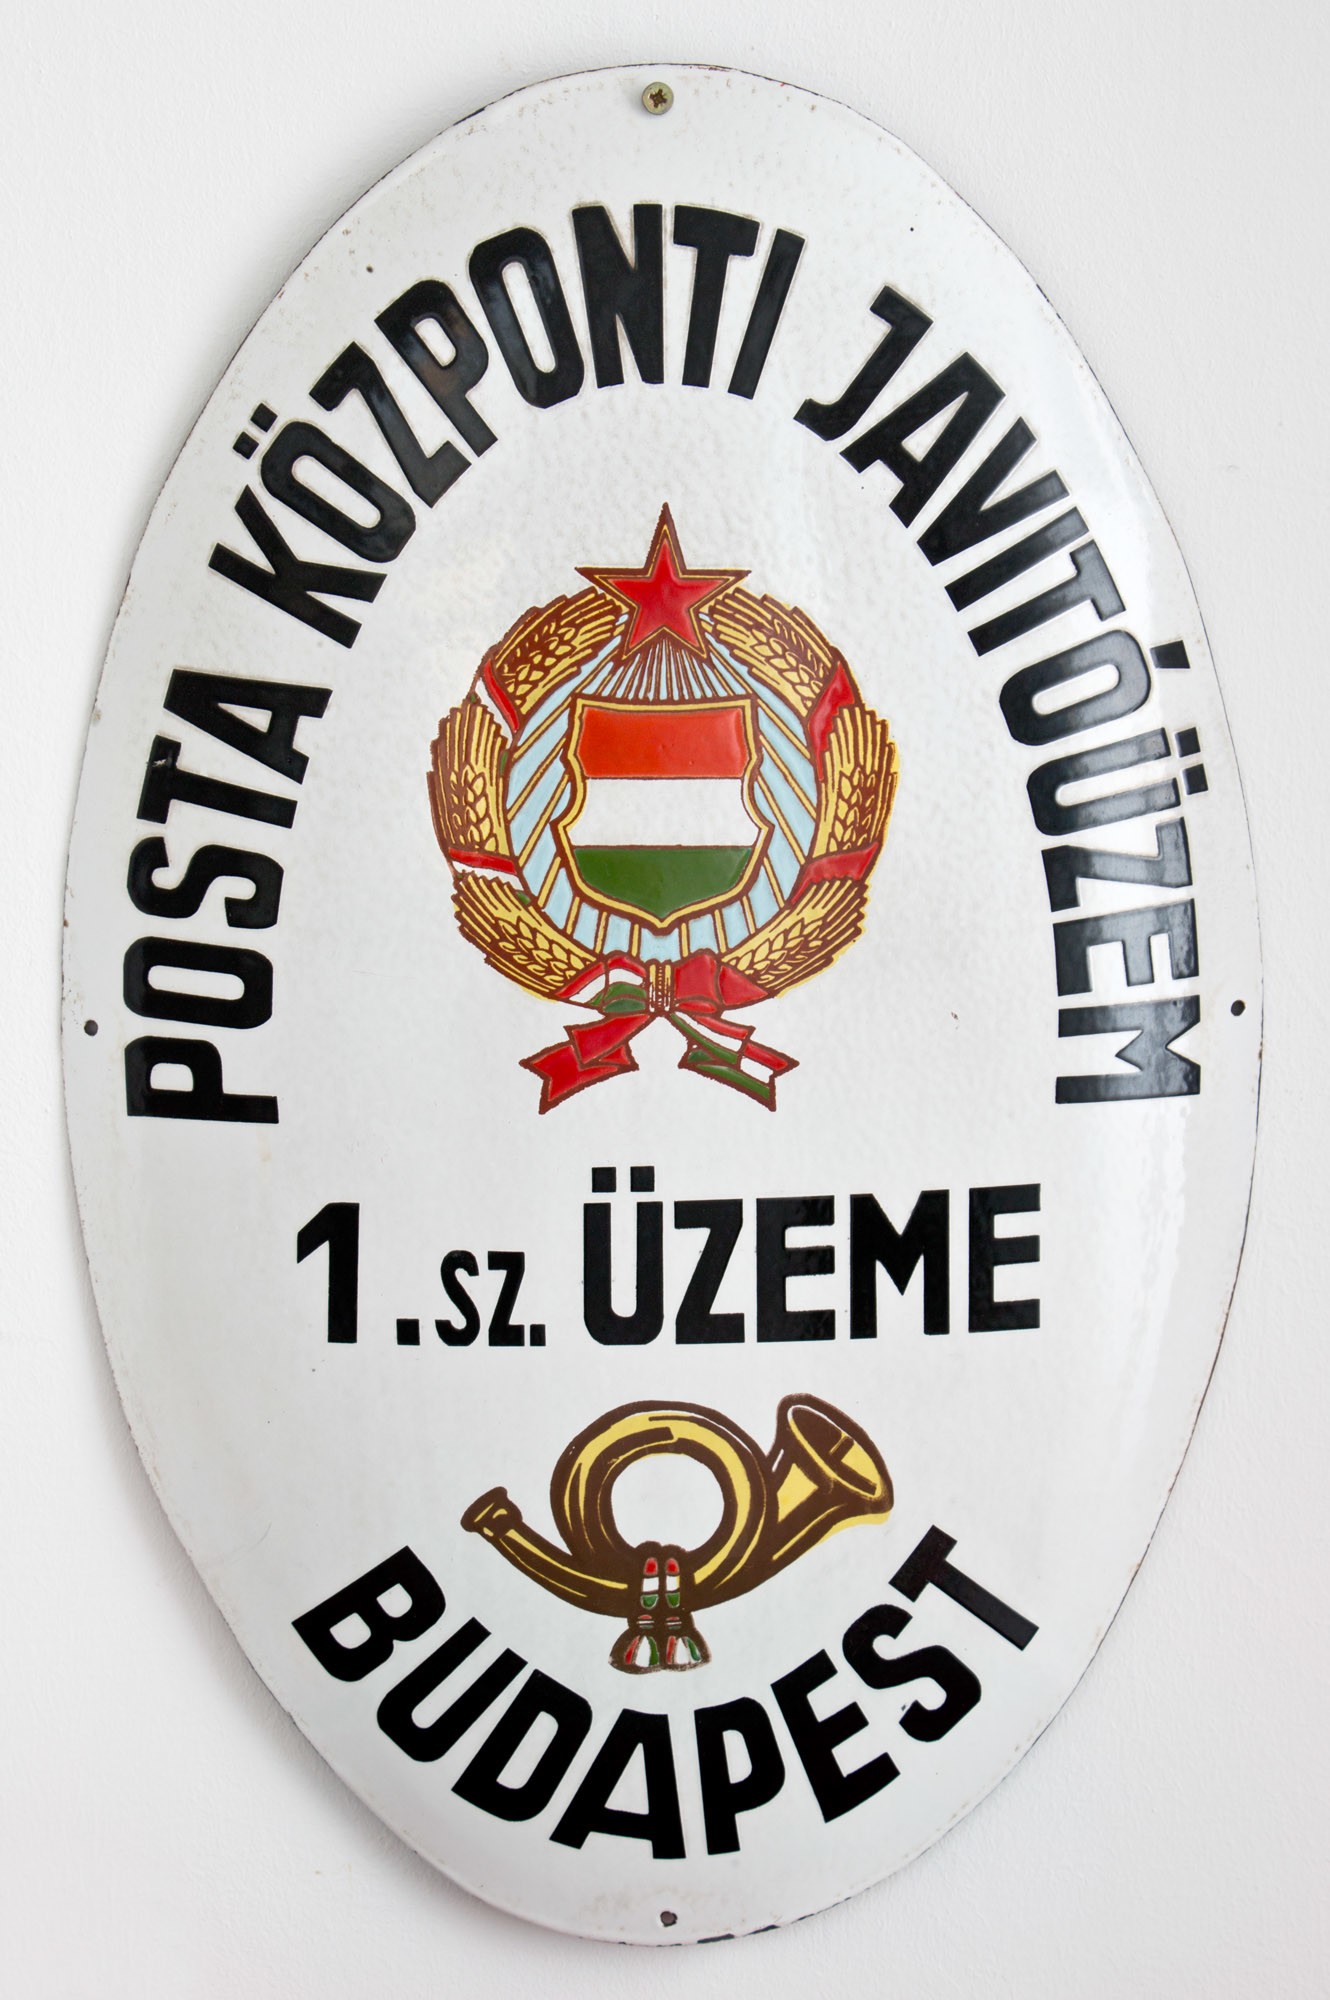 Címertábla (Kádár címerrel) "POSTA KÖZPONTI JAVÍTÓÜZEM 1. SZ. ÜZEME BUDAPEST" (Postamúzeum CC BY-NC-SA)